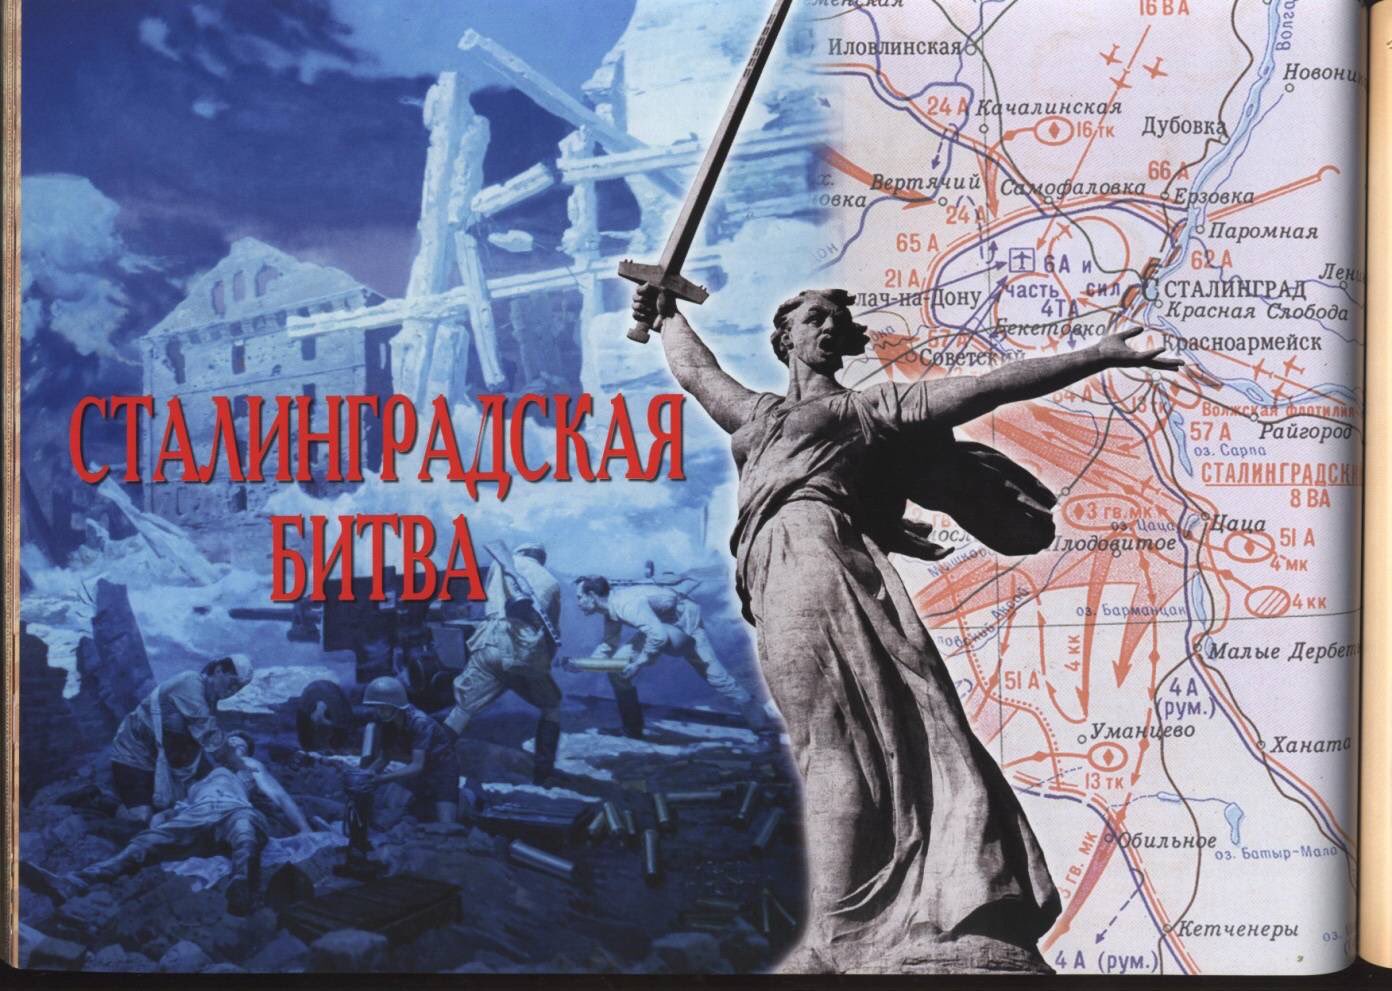 80 лет со дня победы Вооружённых сил СССР над армией гитлеровской Германии в 1943 г. в Сталинградской битве.